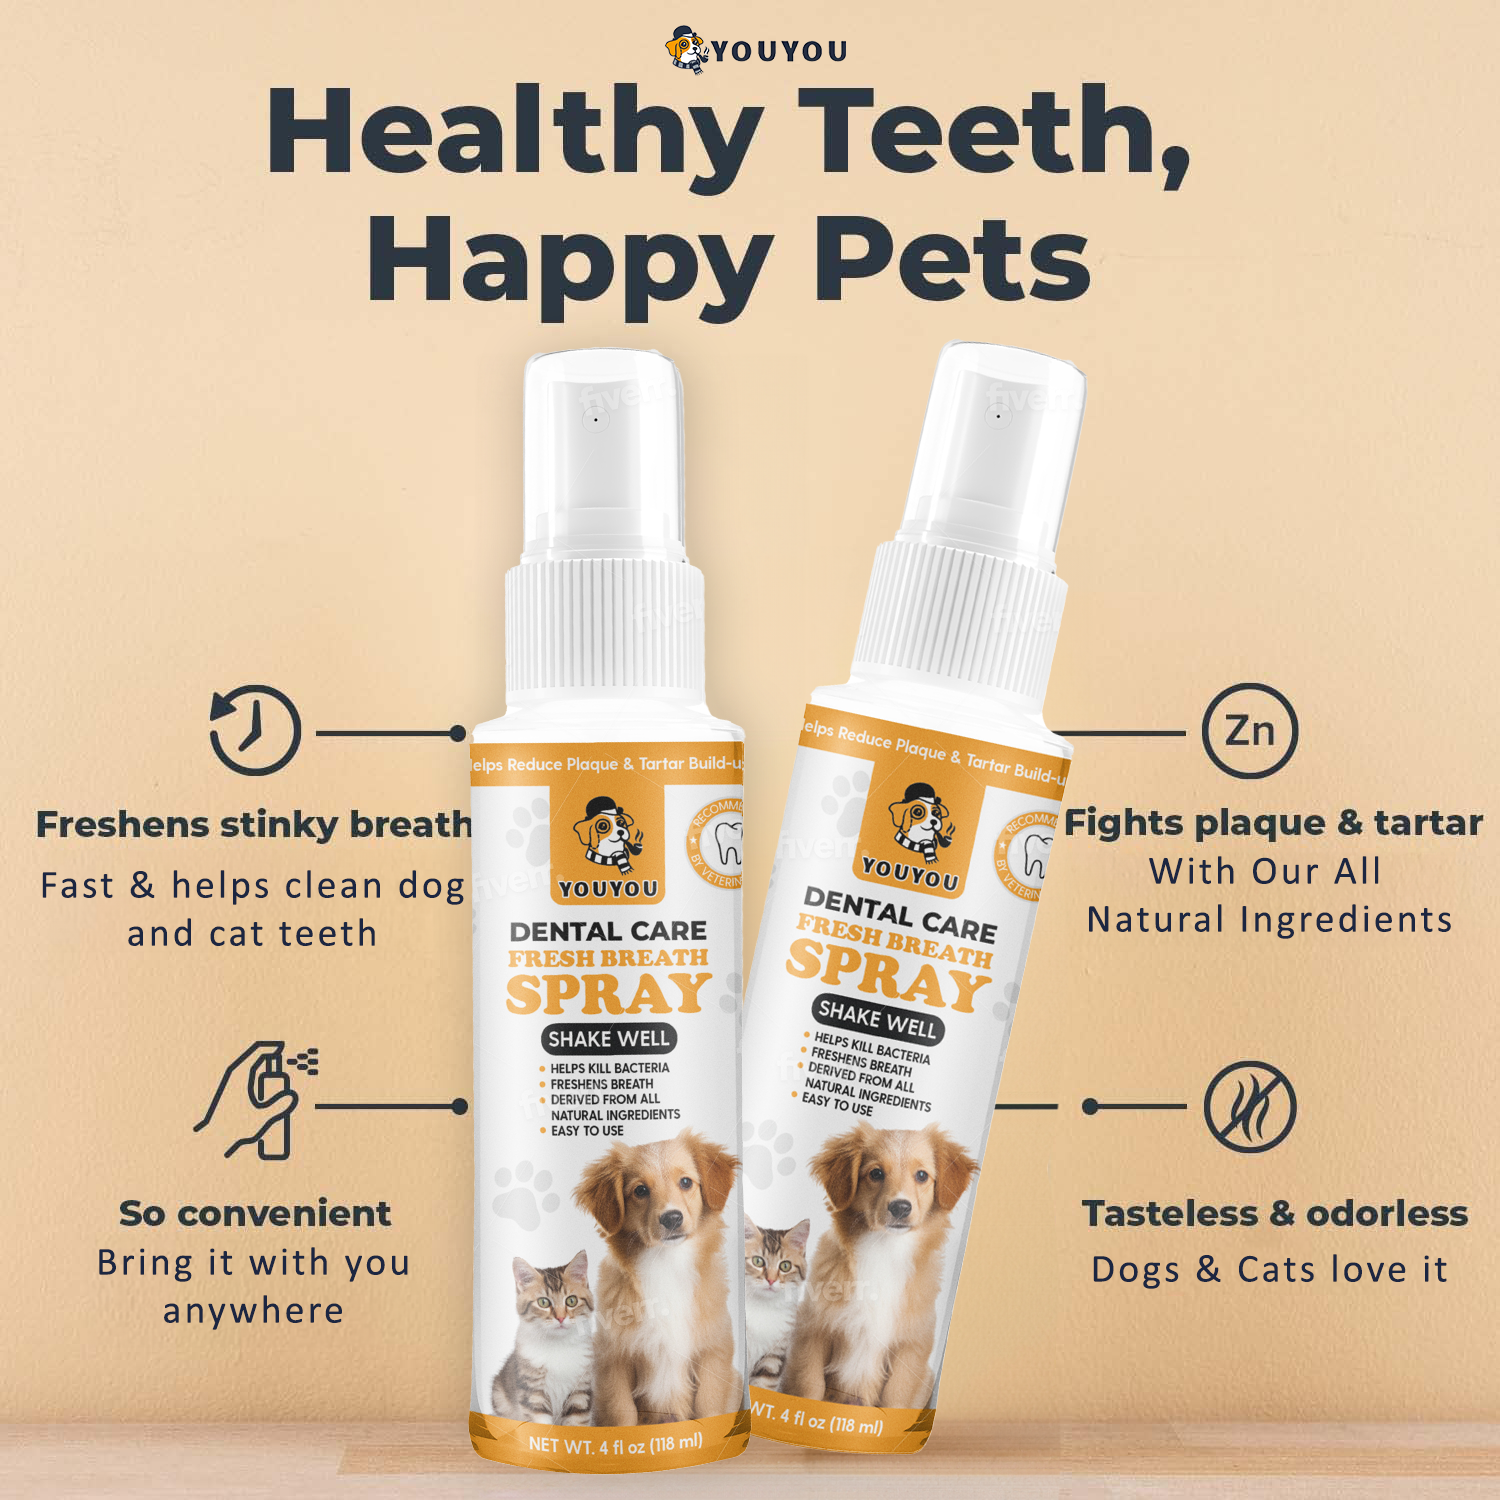 Pet Dental Care Bundle (Finger Wipes & Spray)